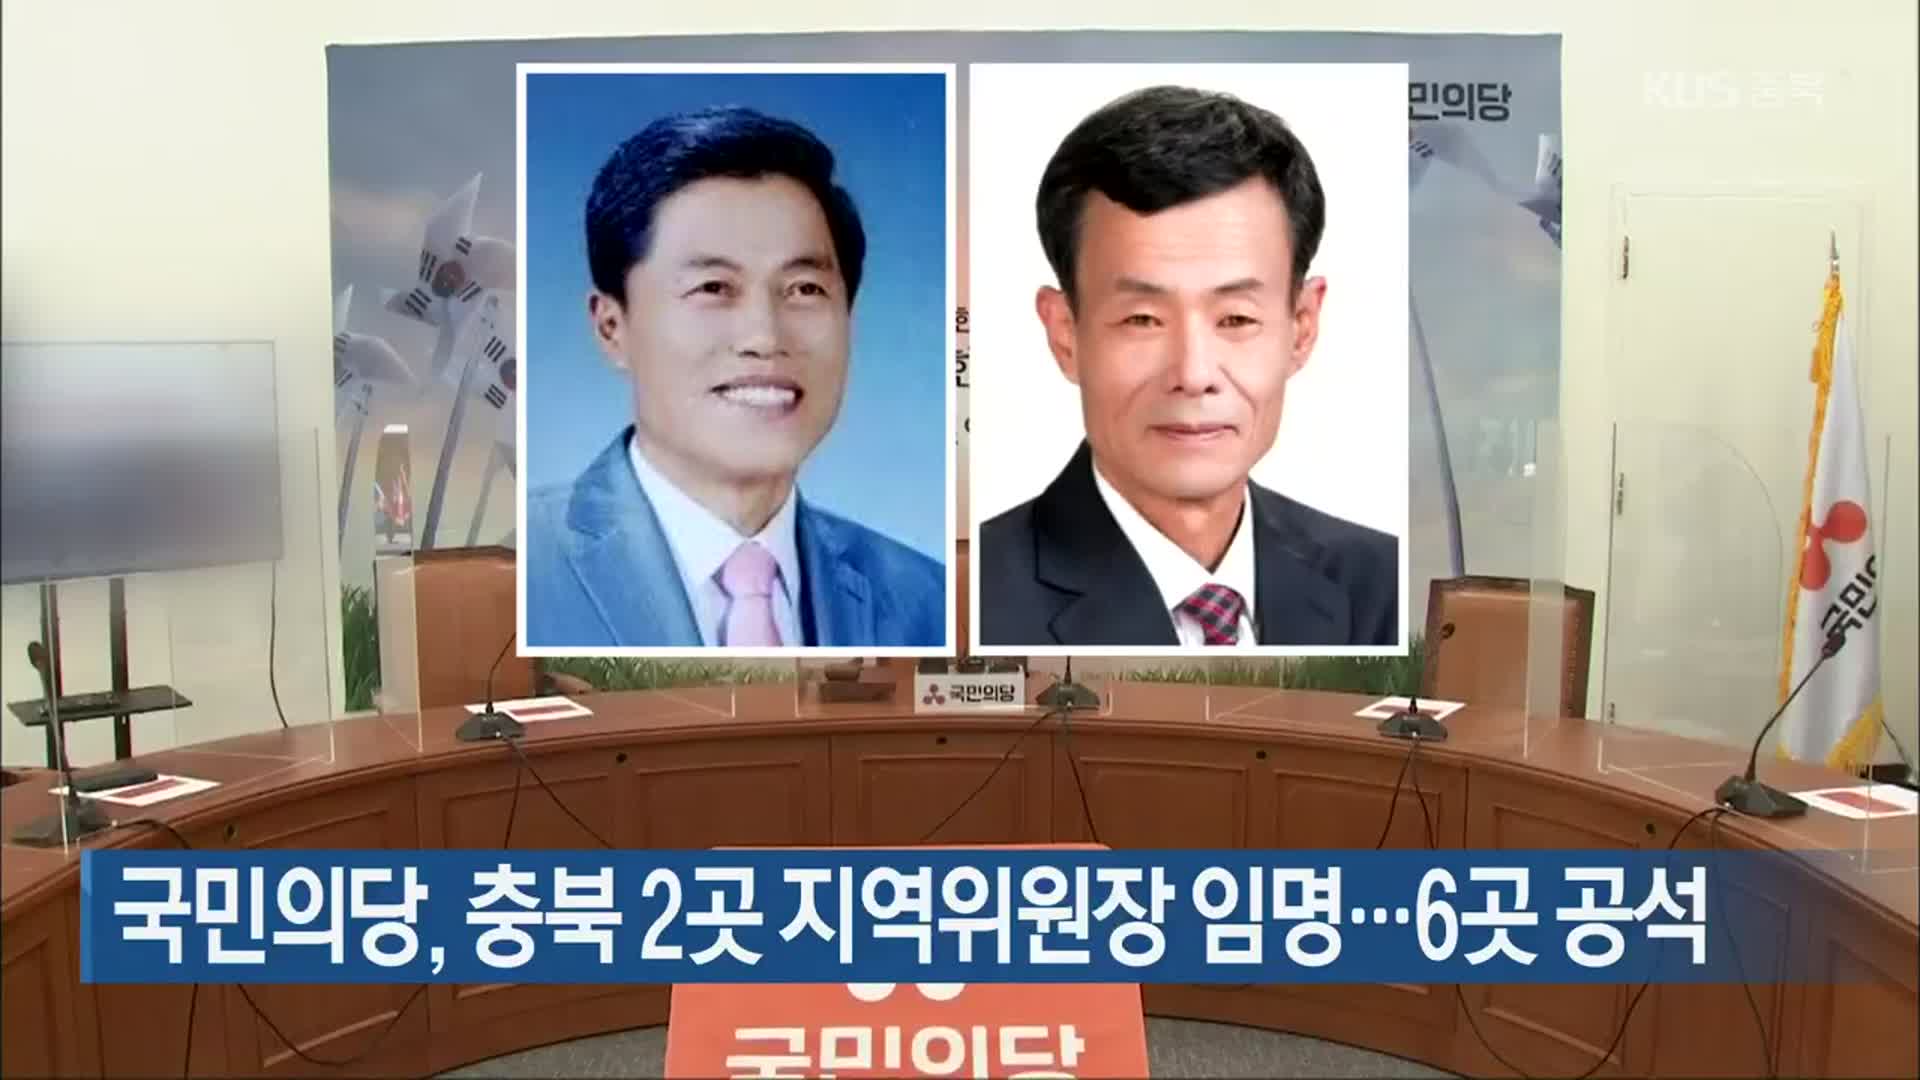 국민의당, 충북 2곳 지역위원장 임명…6곳 공석